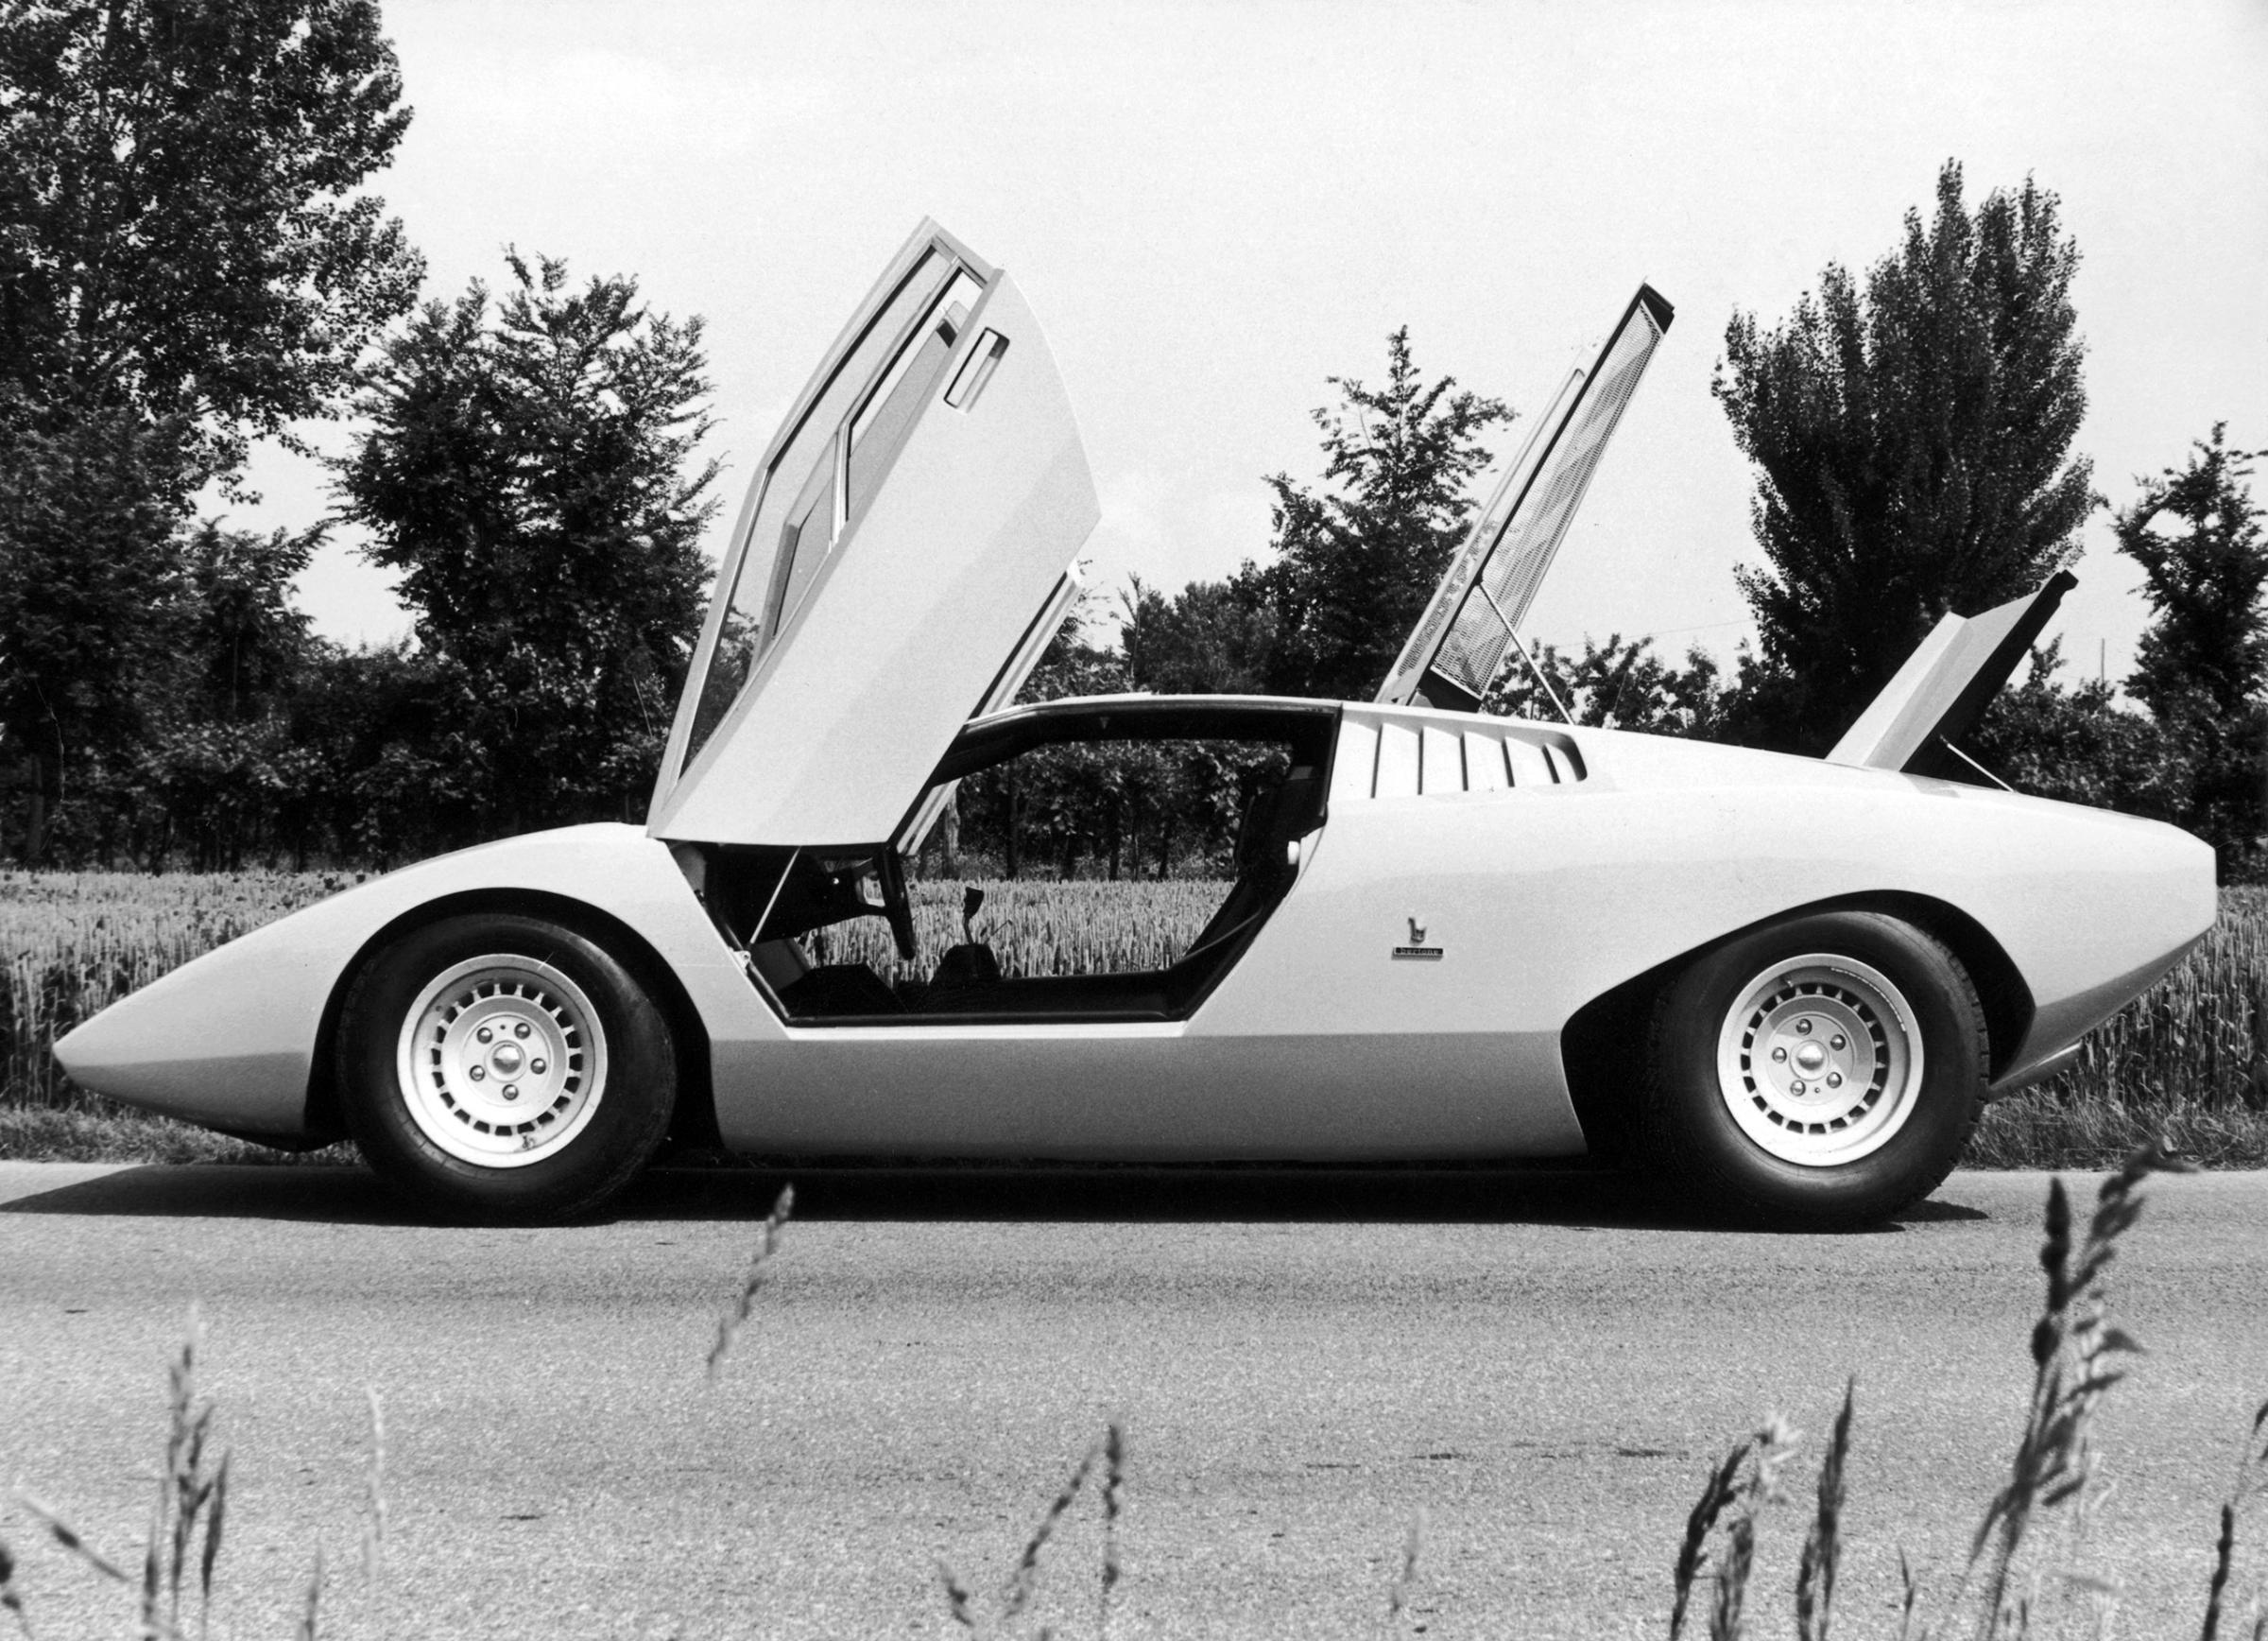 The Lamborghini LP500, first prototype of the Countach sports car, designed by by Marcello Gandini of the Bertone design studio, circa 1972.